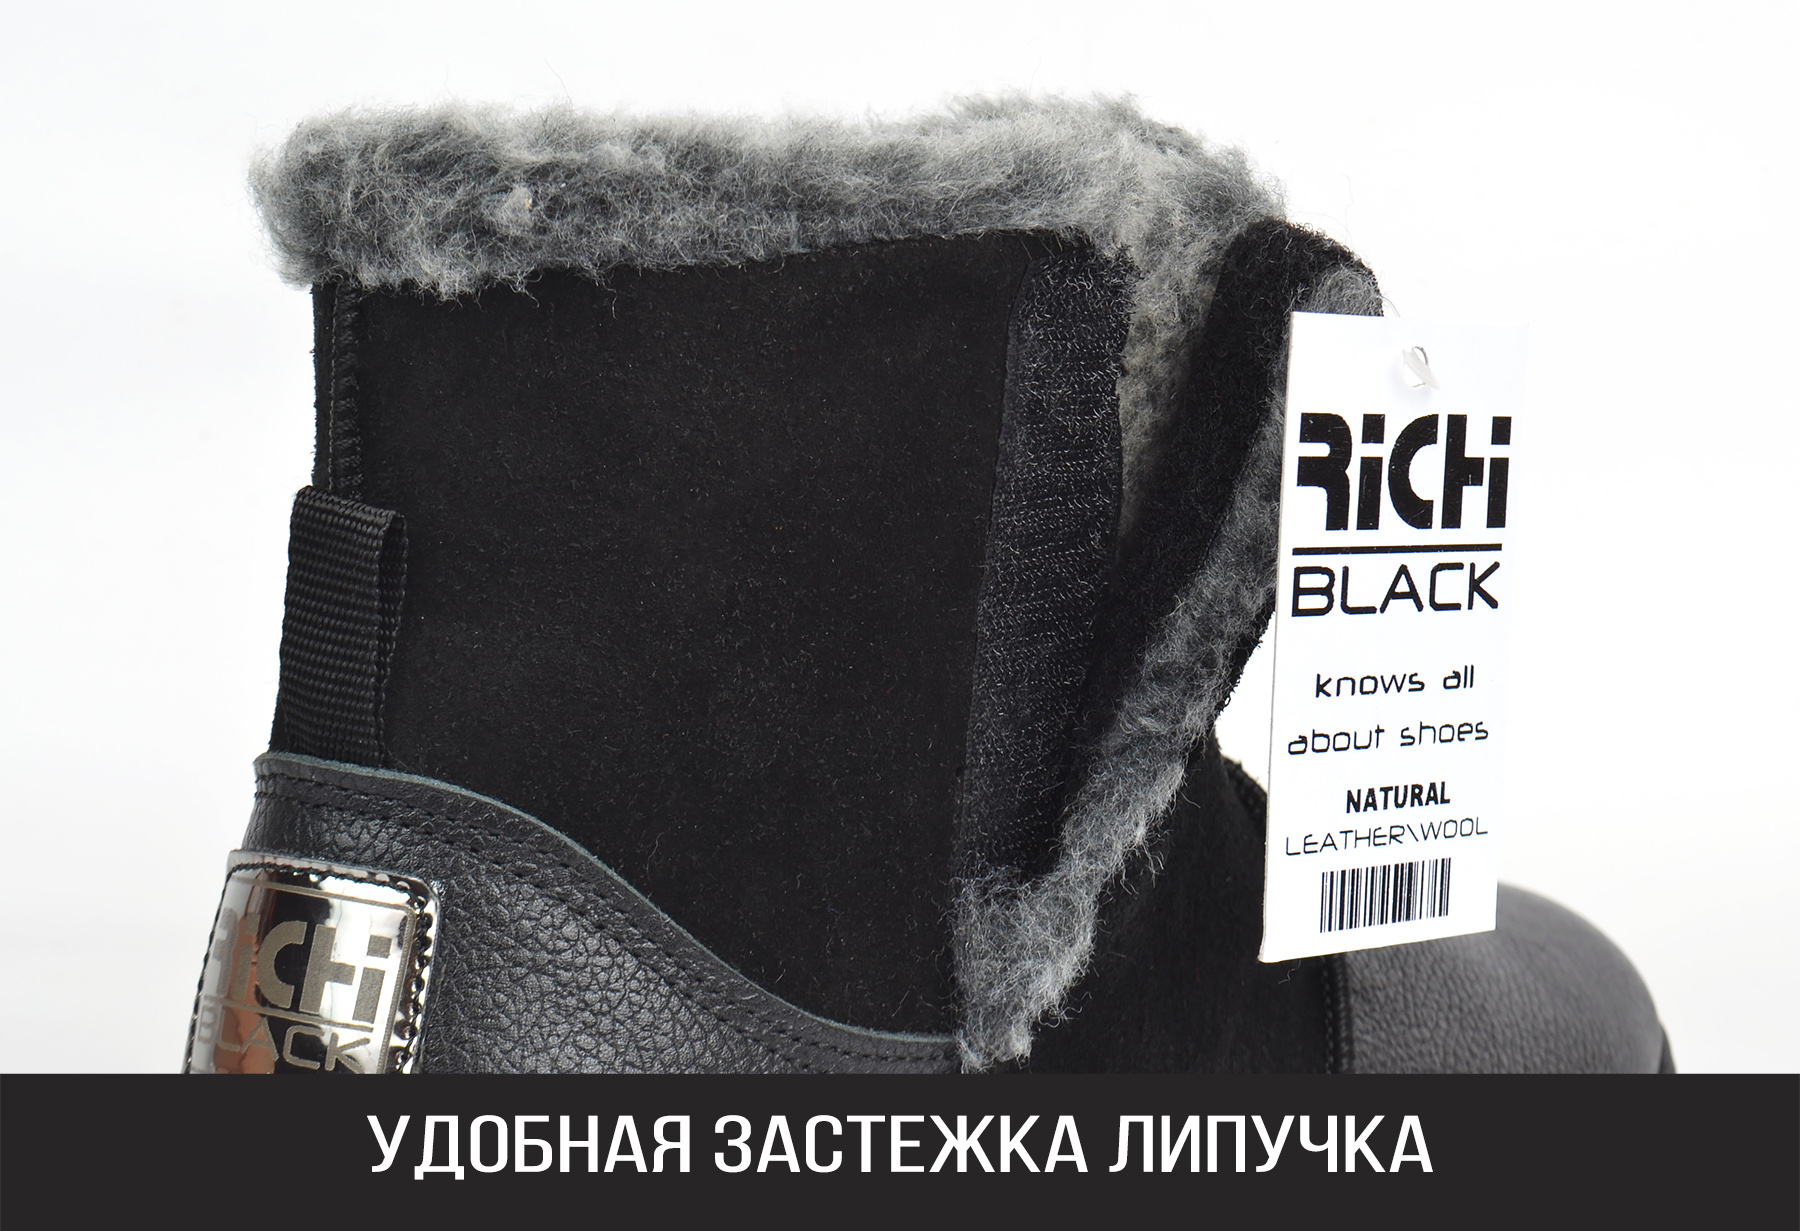 Сапоги угги мужские кожаные Richi Black со 100% натуральным мехом на липучке купить в Украине